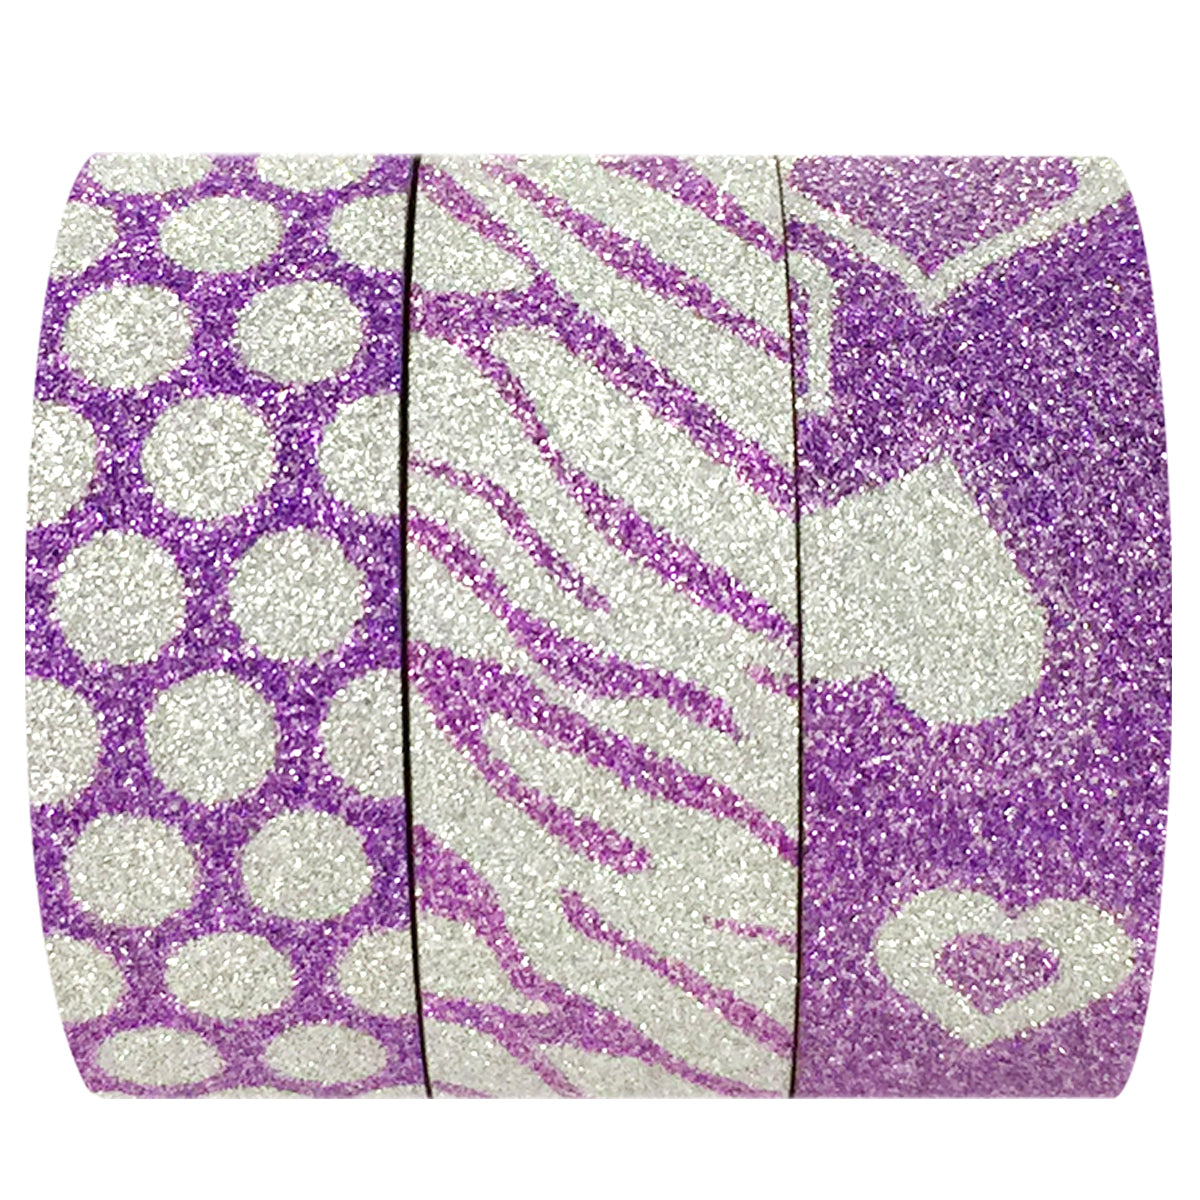 Wrapables Purple Shimmer Washi Masking Tape (Set of 3)